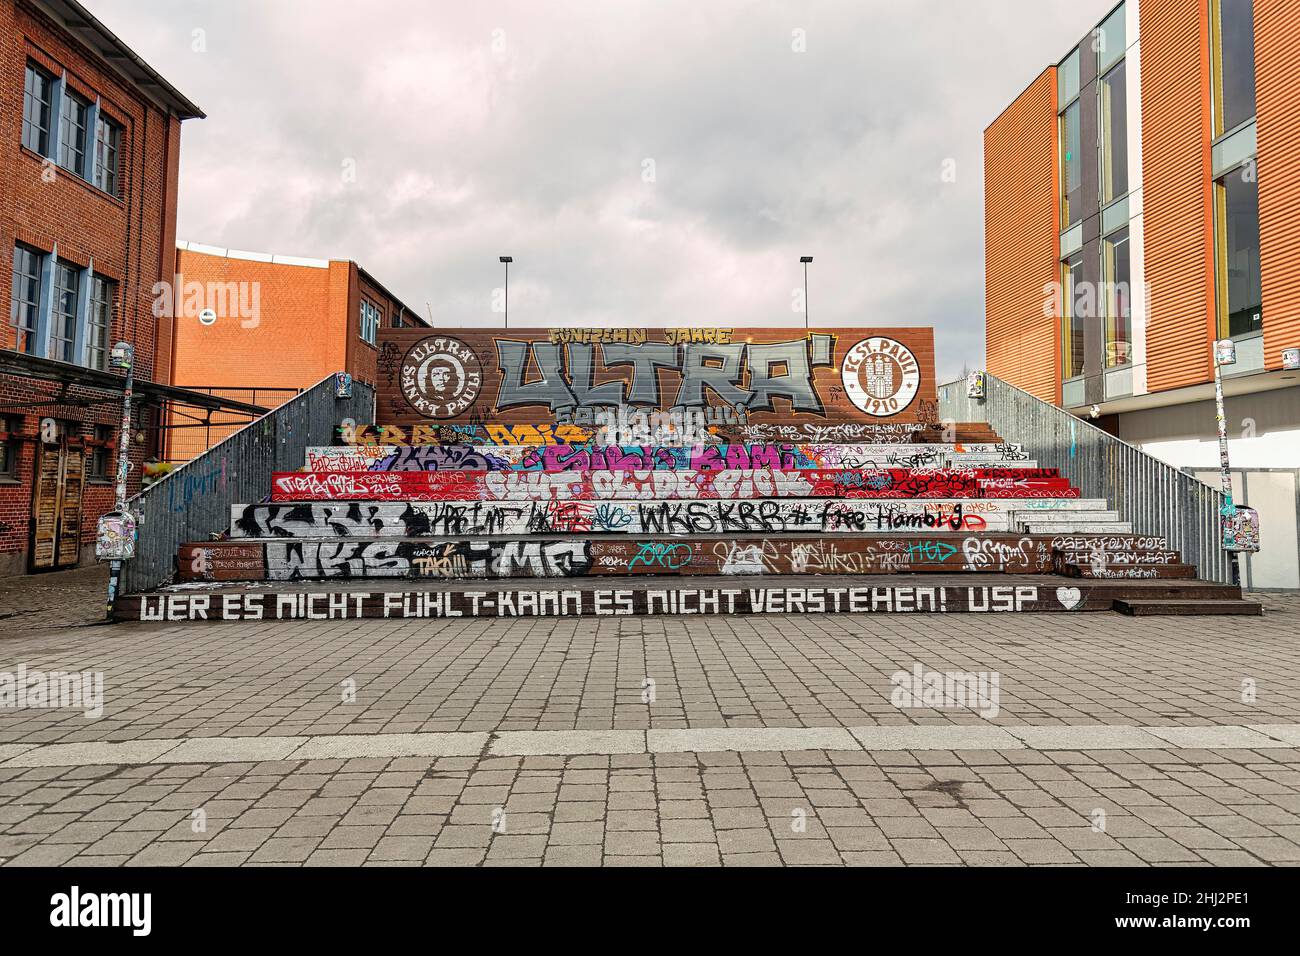 Tribune en bois pour les fans de football du FC St. Pauli, avec logo du groupe Ultra Sankt Pauli, graffiti et slogans, Hambourg, Allemagne Banque D'Images